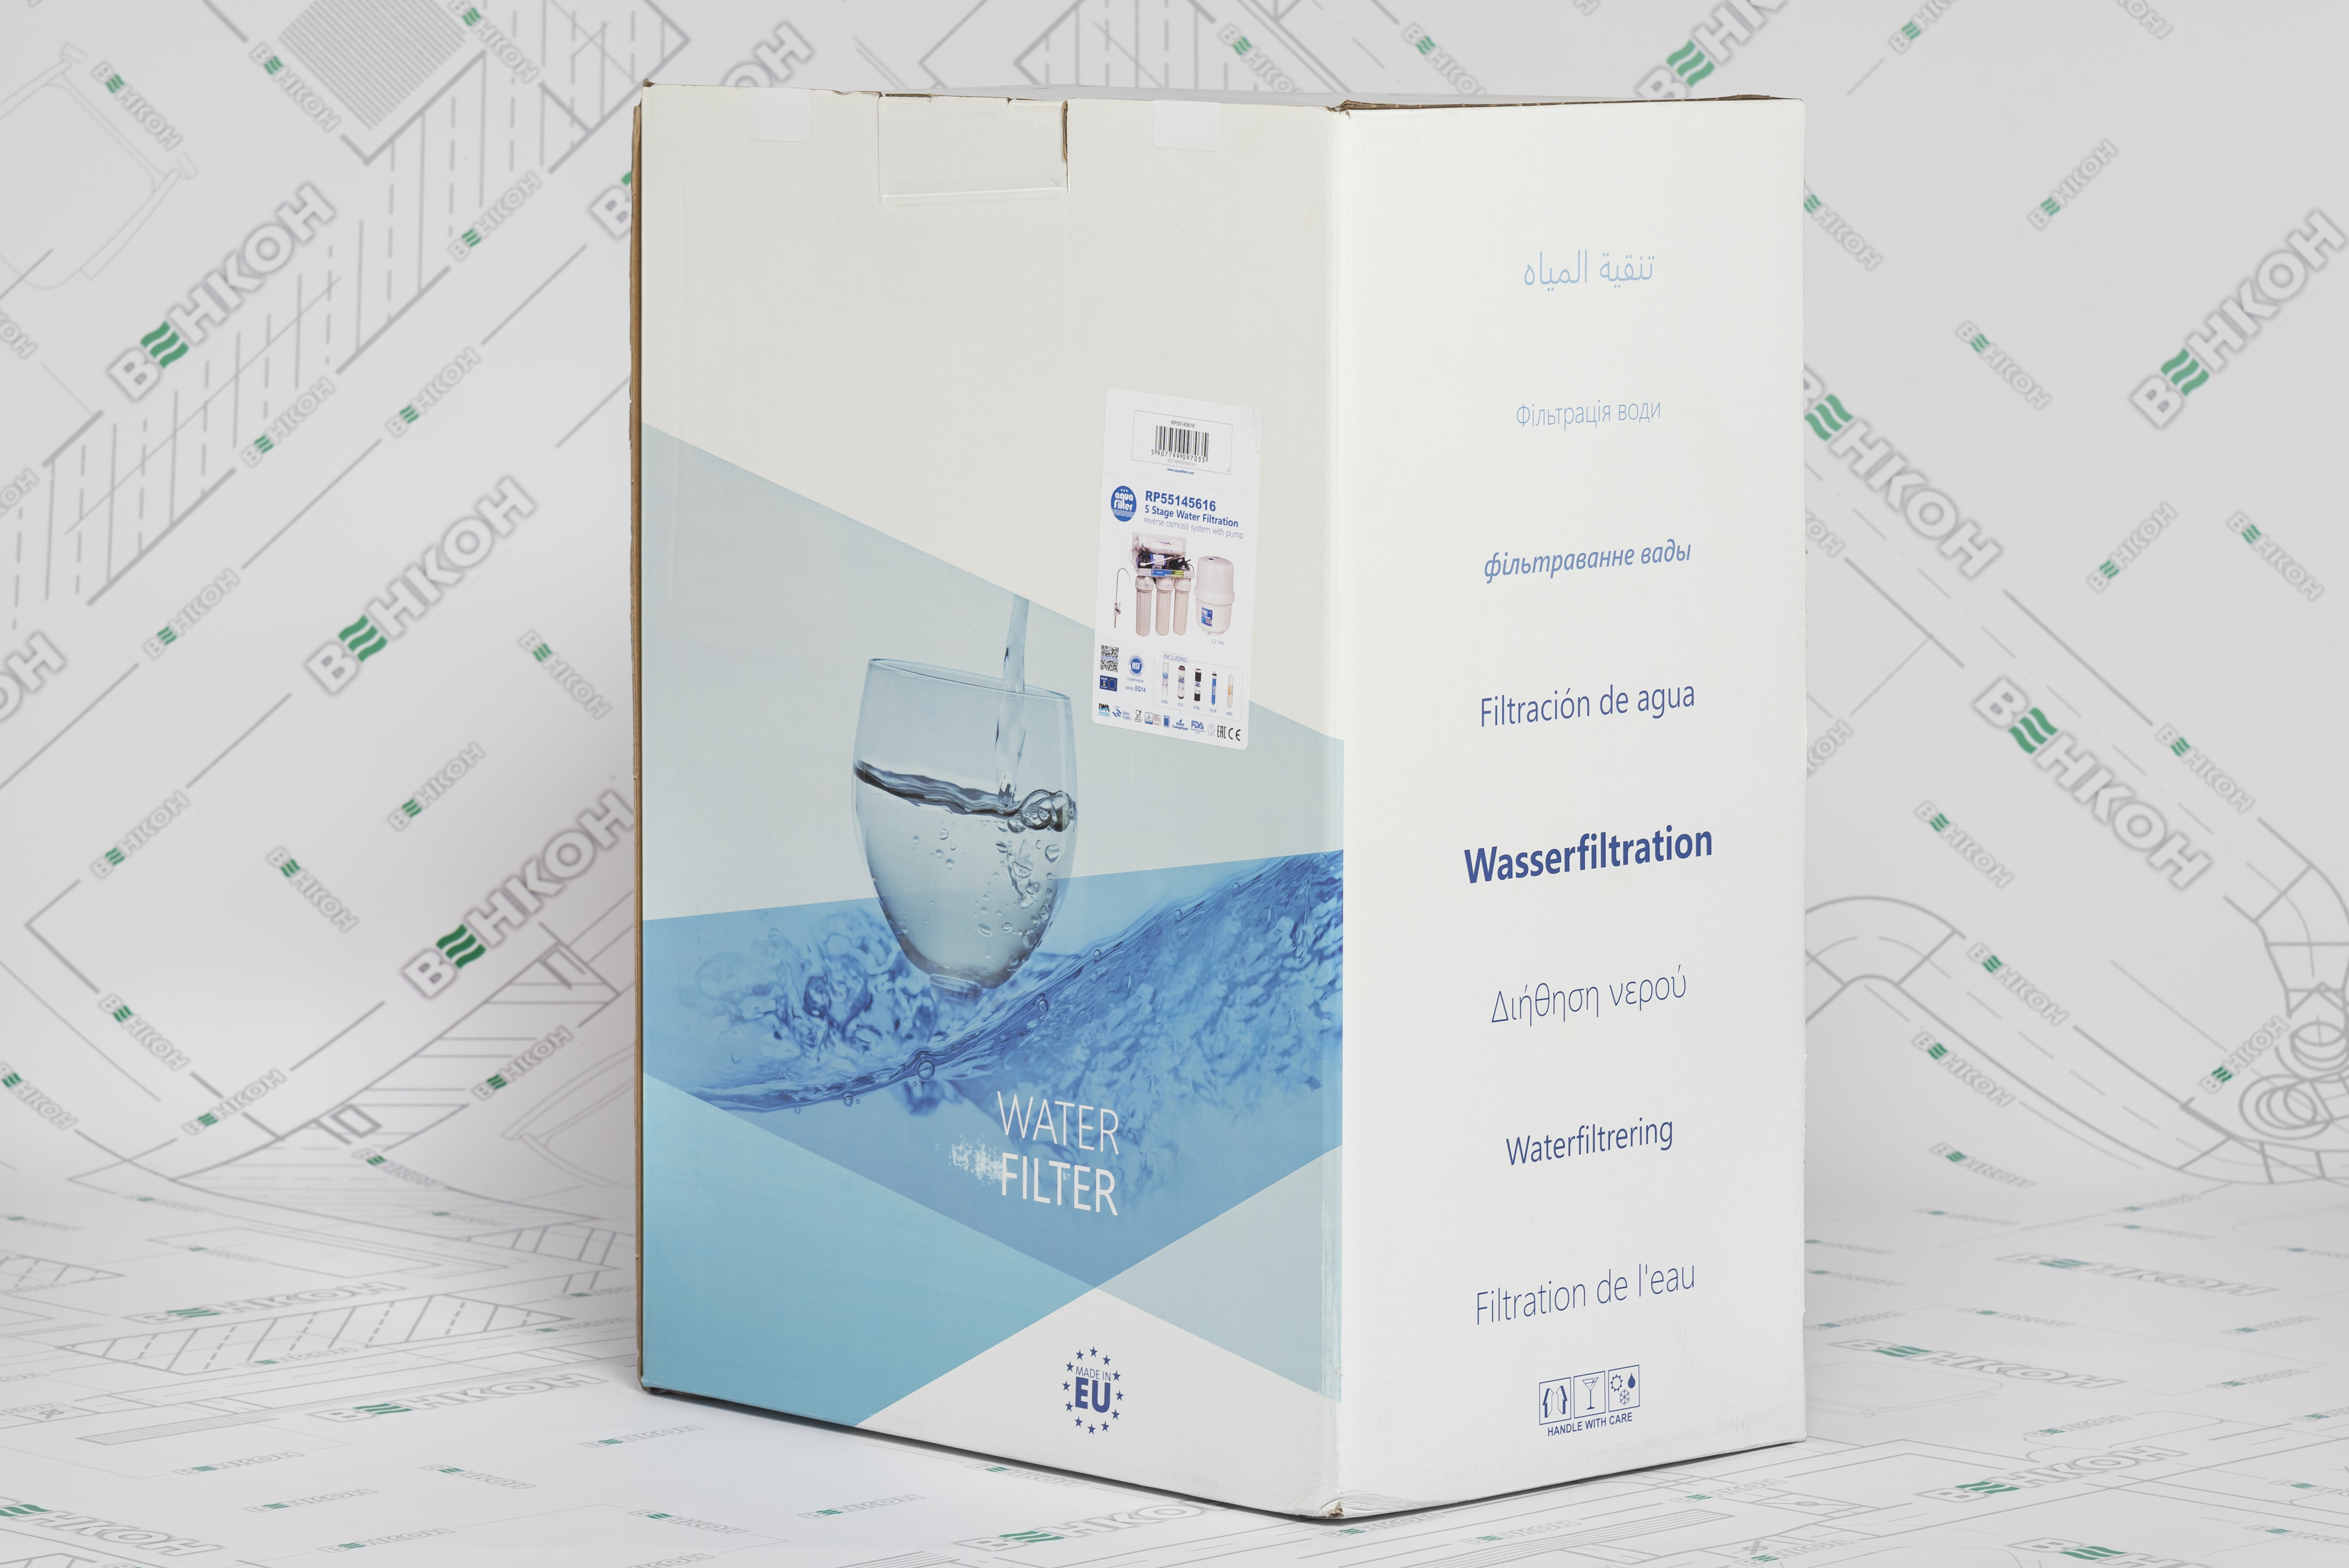 в ассортименте Фильтр для воды Aquafilter RP55145616 в магазине - фото 18